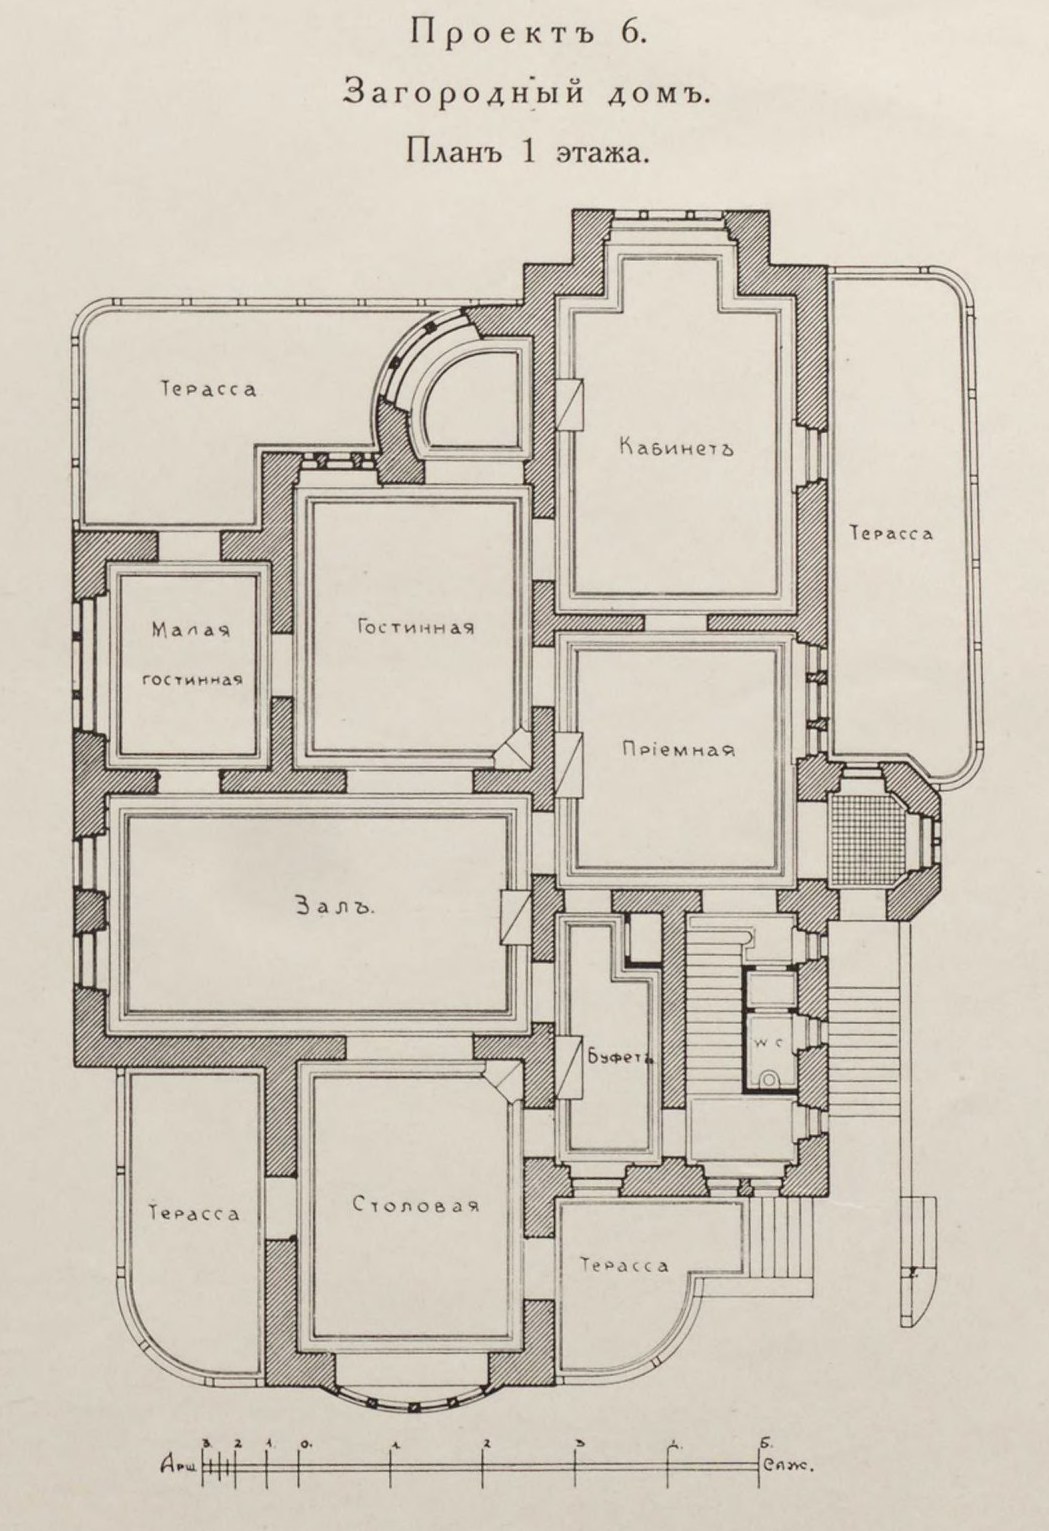 Загородный дом близ Берлина. План 1-го этажа, в нем: передняя, приемная, кабинет, гостиная, малая гостиная, зал, столовая, буфет с лифтом, террасы